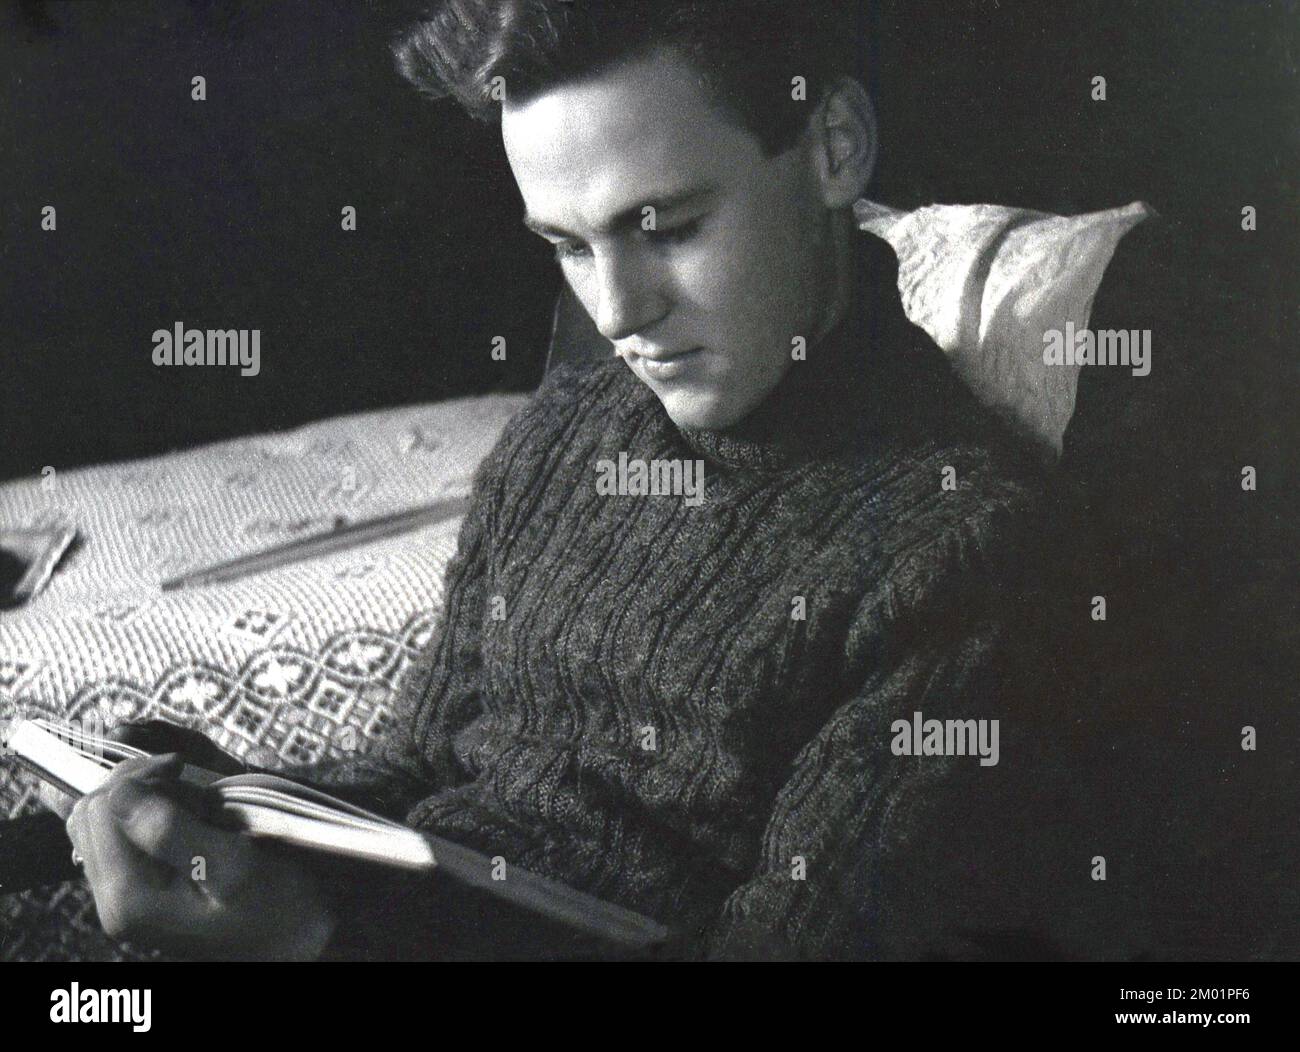 1940s, histórico, hombre joven, usando un suéter de lana de punto grueso, cuello enrollado, como usado por marinero, sentado en una silla de salón de madera armada, leyendo un libro Inglaterra, Reino Unido. Foto de stock